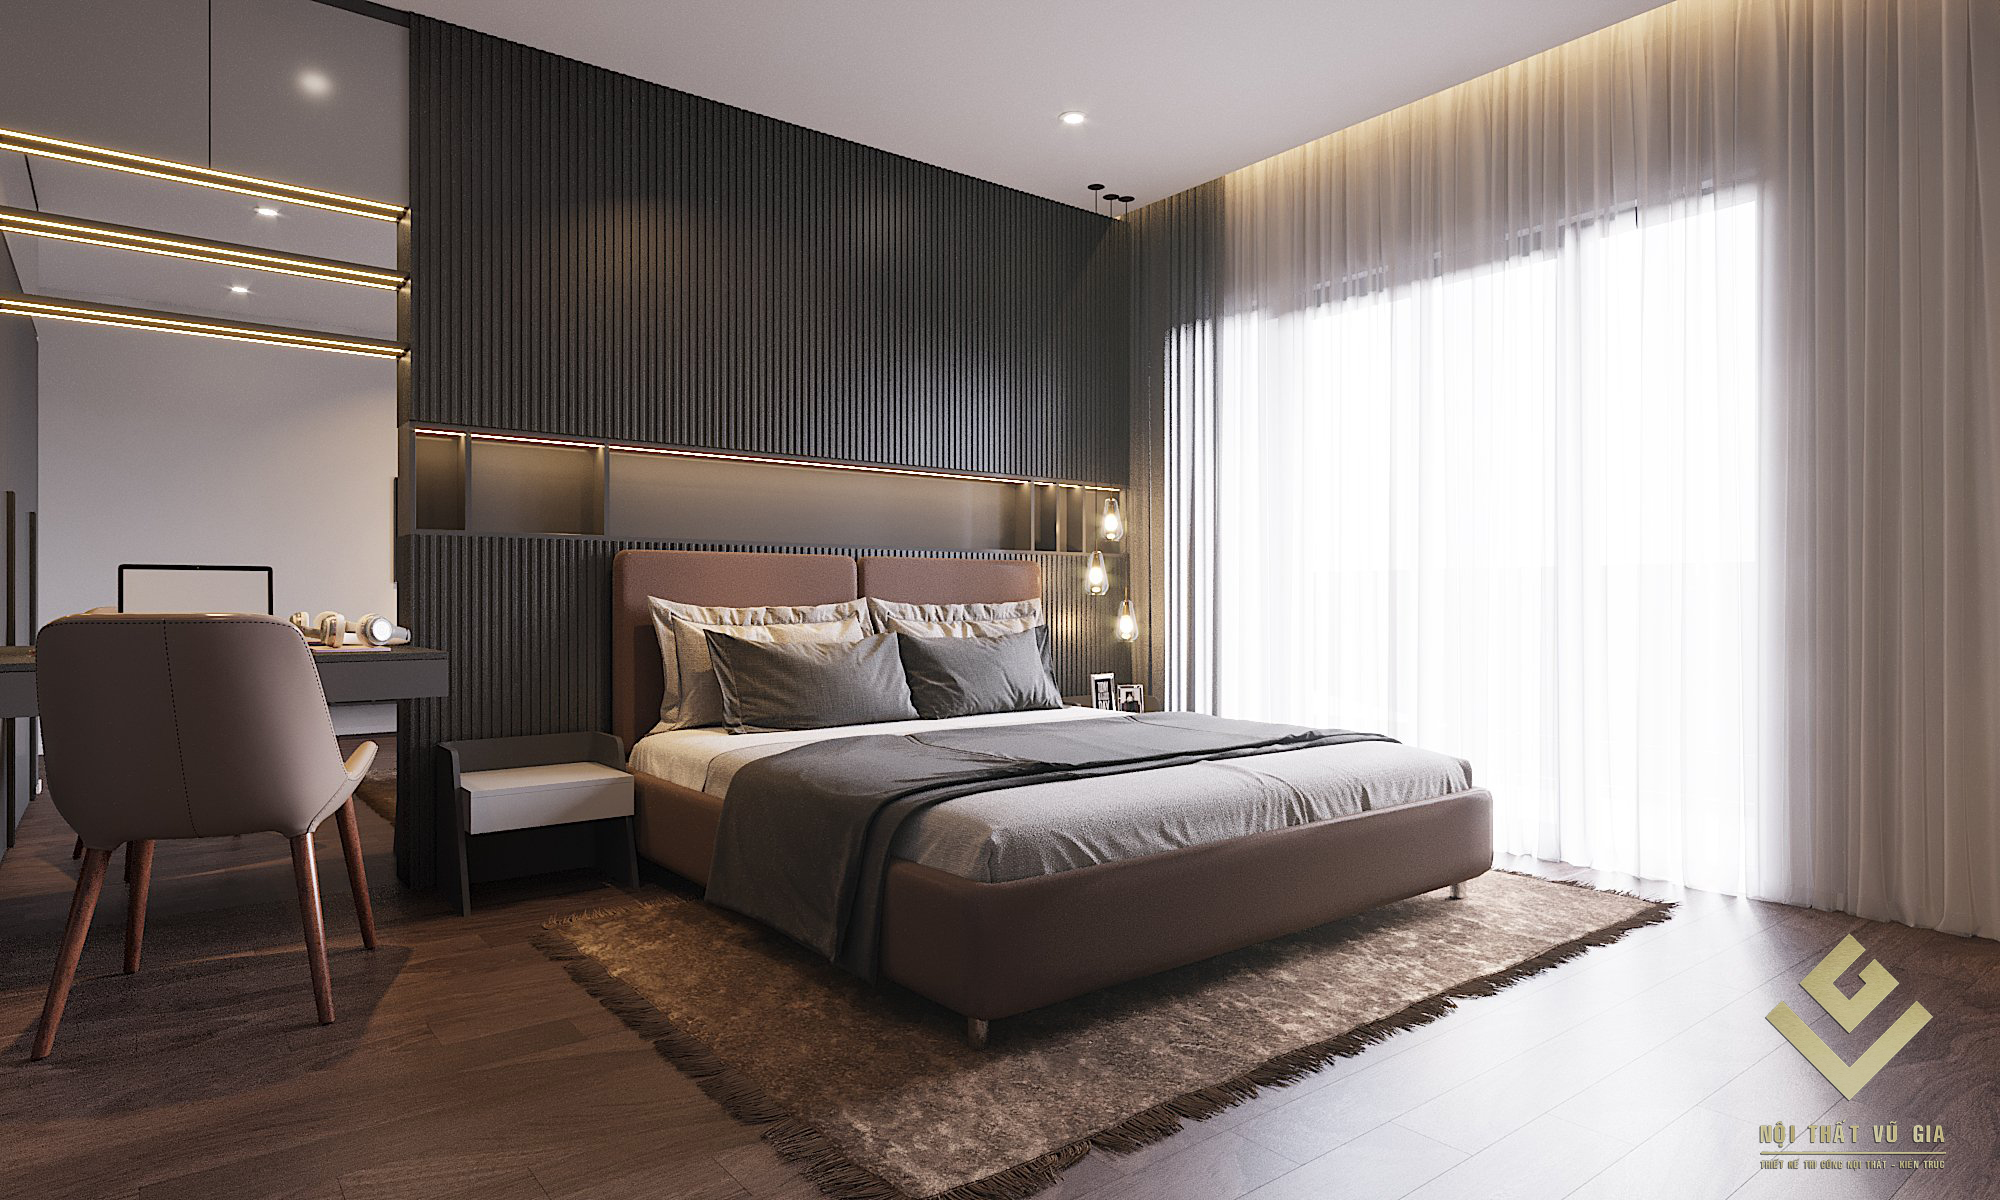 Phòng ngủ số 2 có diện tích lớn hơn, tương đương phòng master với gam màu ấm nóng chủ đạo.